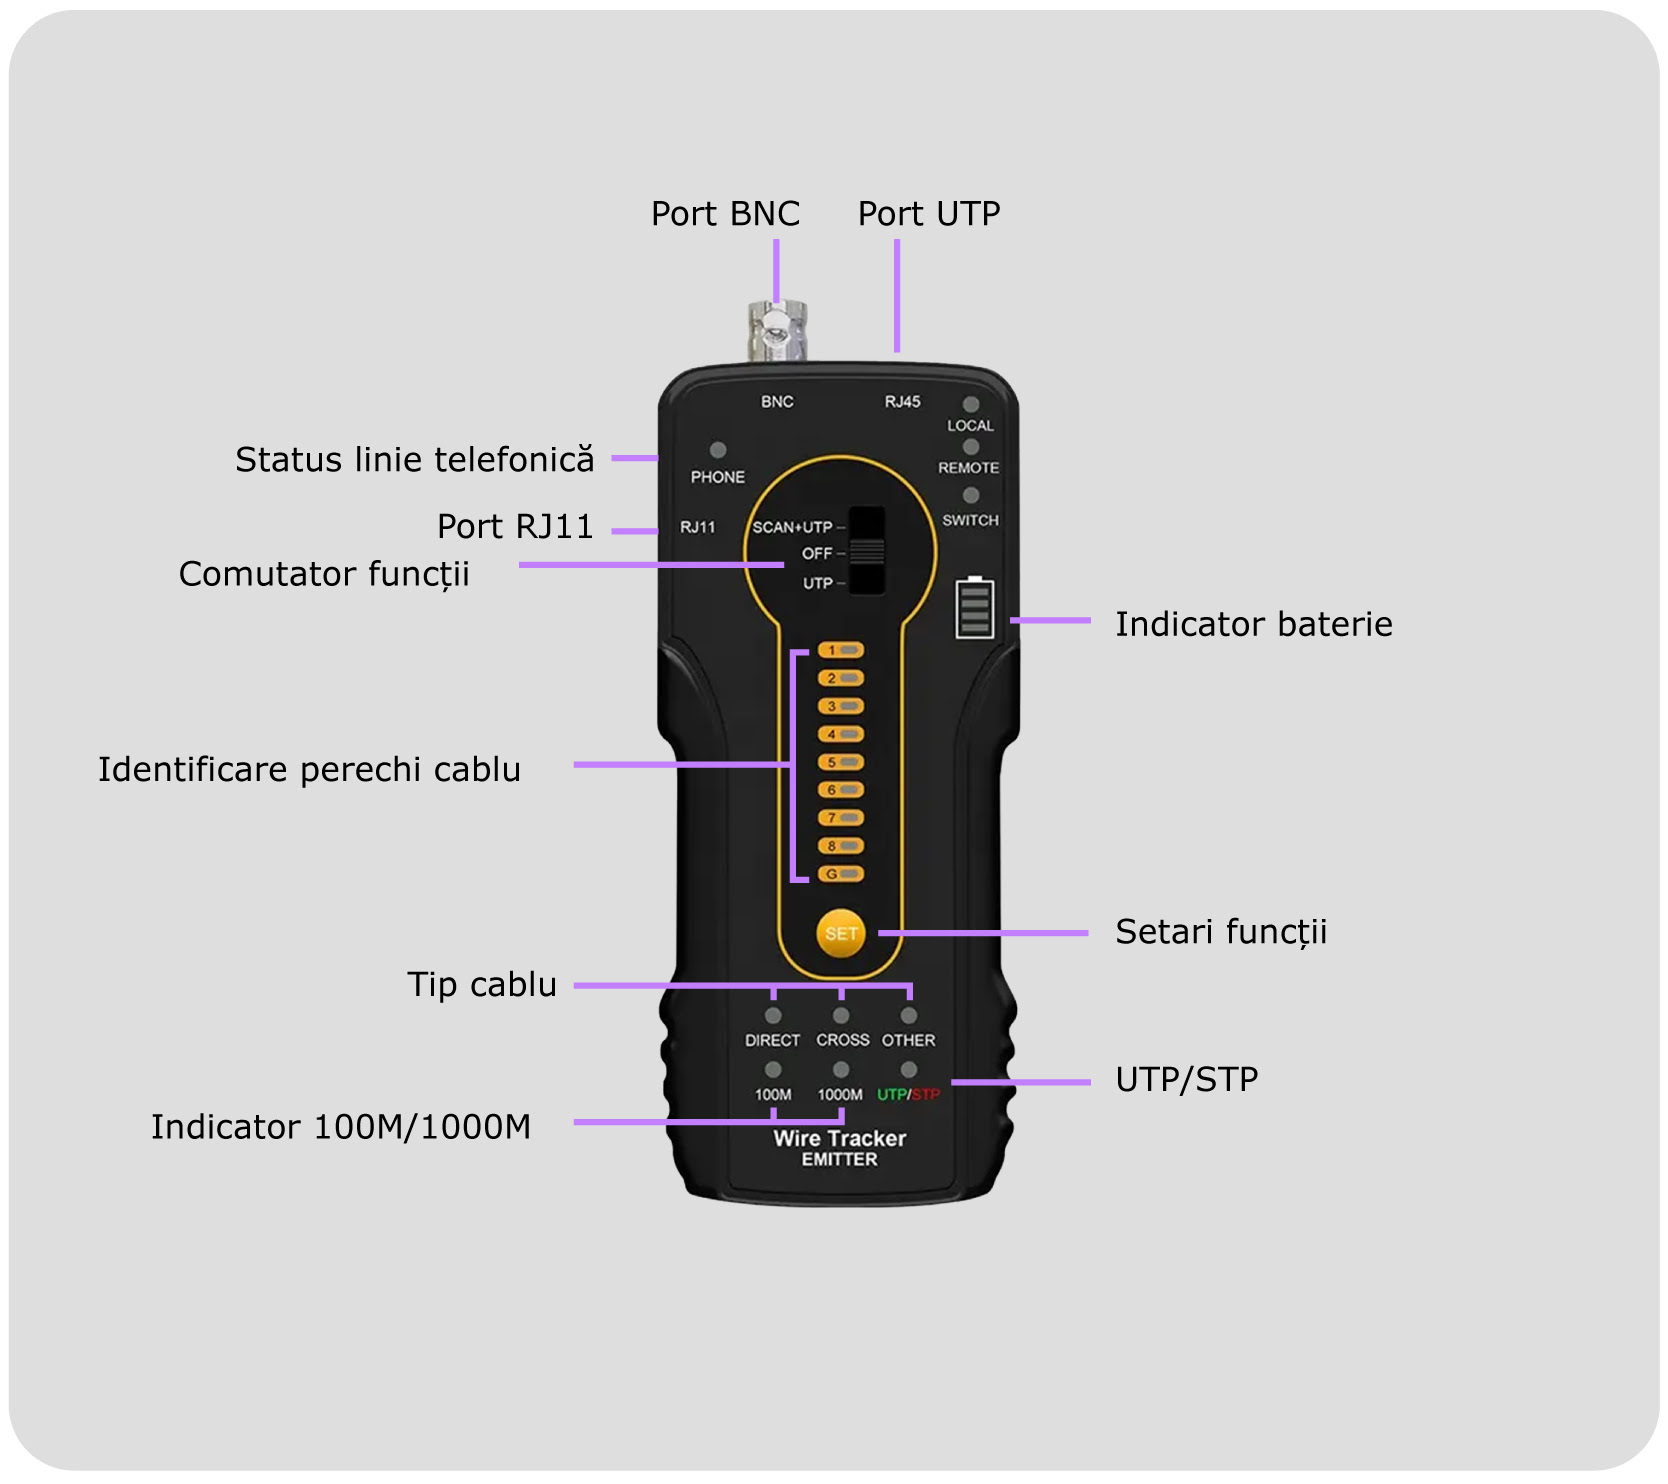 Tester de cablu cu terminal testare cablu UTP si port verificare POE (PD) CT-66